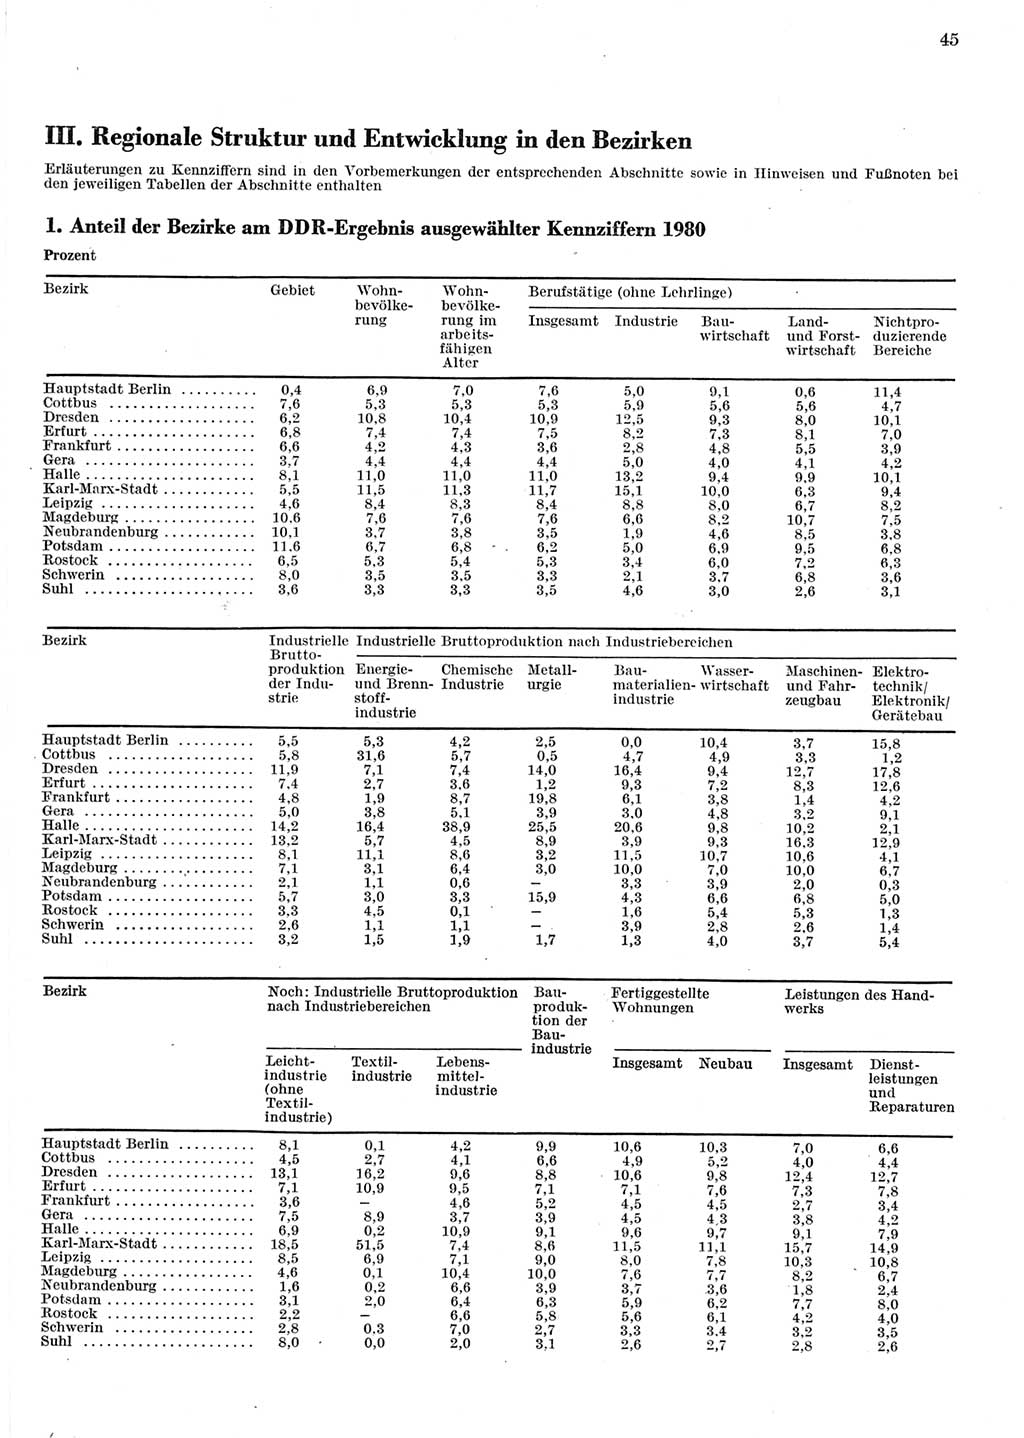 Statistisches Jahrbuch der Deutschen Demokratischen Republik (DDR) 1981, Seite 45 (Stat. Jb. DDR 1981, S. 45)